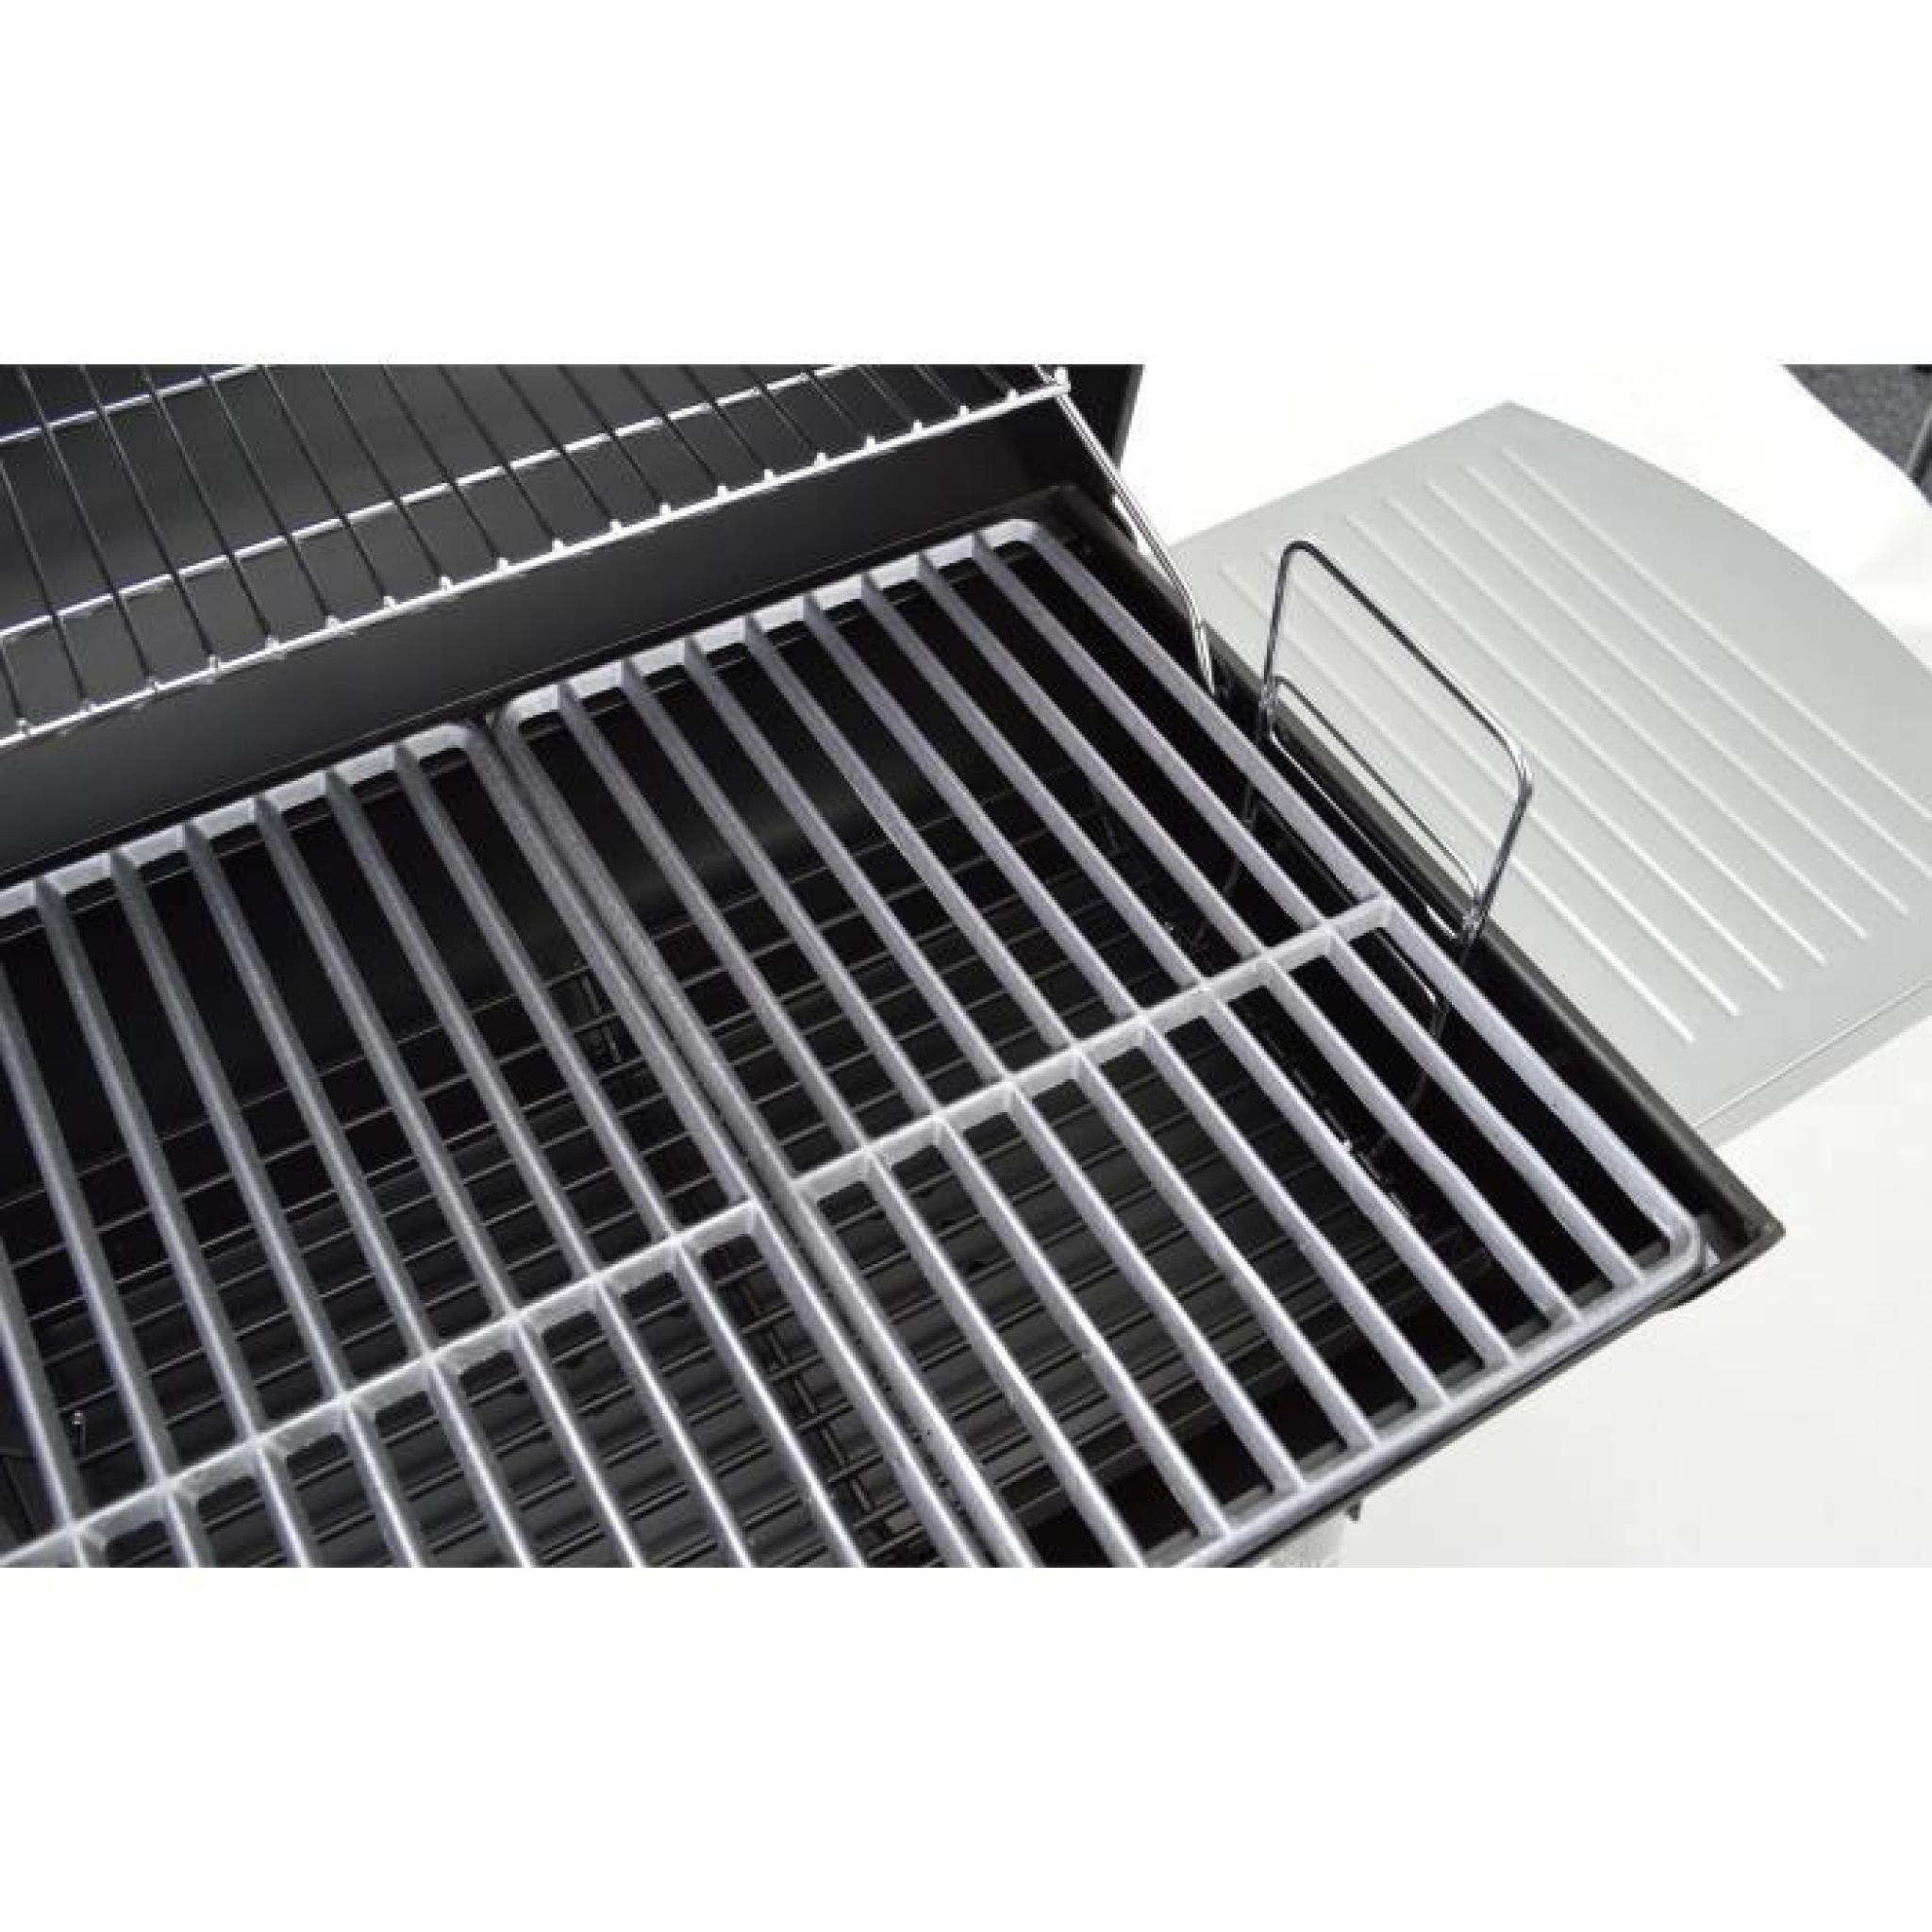 LANDMANN Barbecue à charbon Black Taurus 660 Expert - Fonte émaillée - pas cher